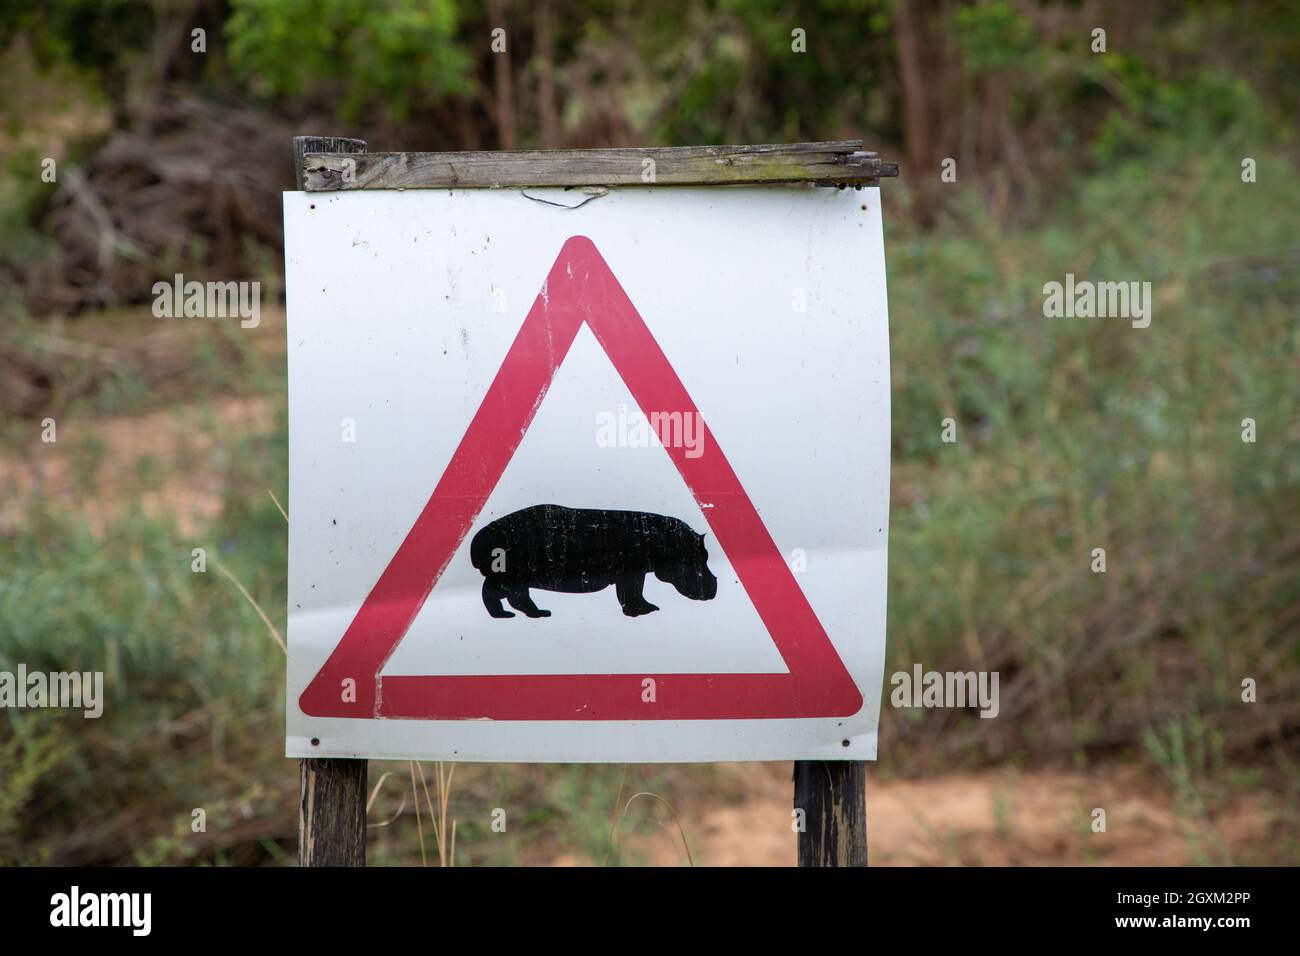 Nahaufnahme eines Warnzeichens, das die Menschen warnt, dass Nilpferde in der Gegend sind. Stockfoto